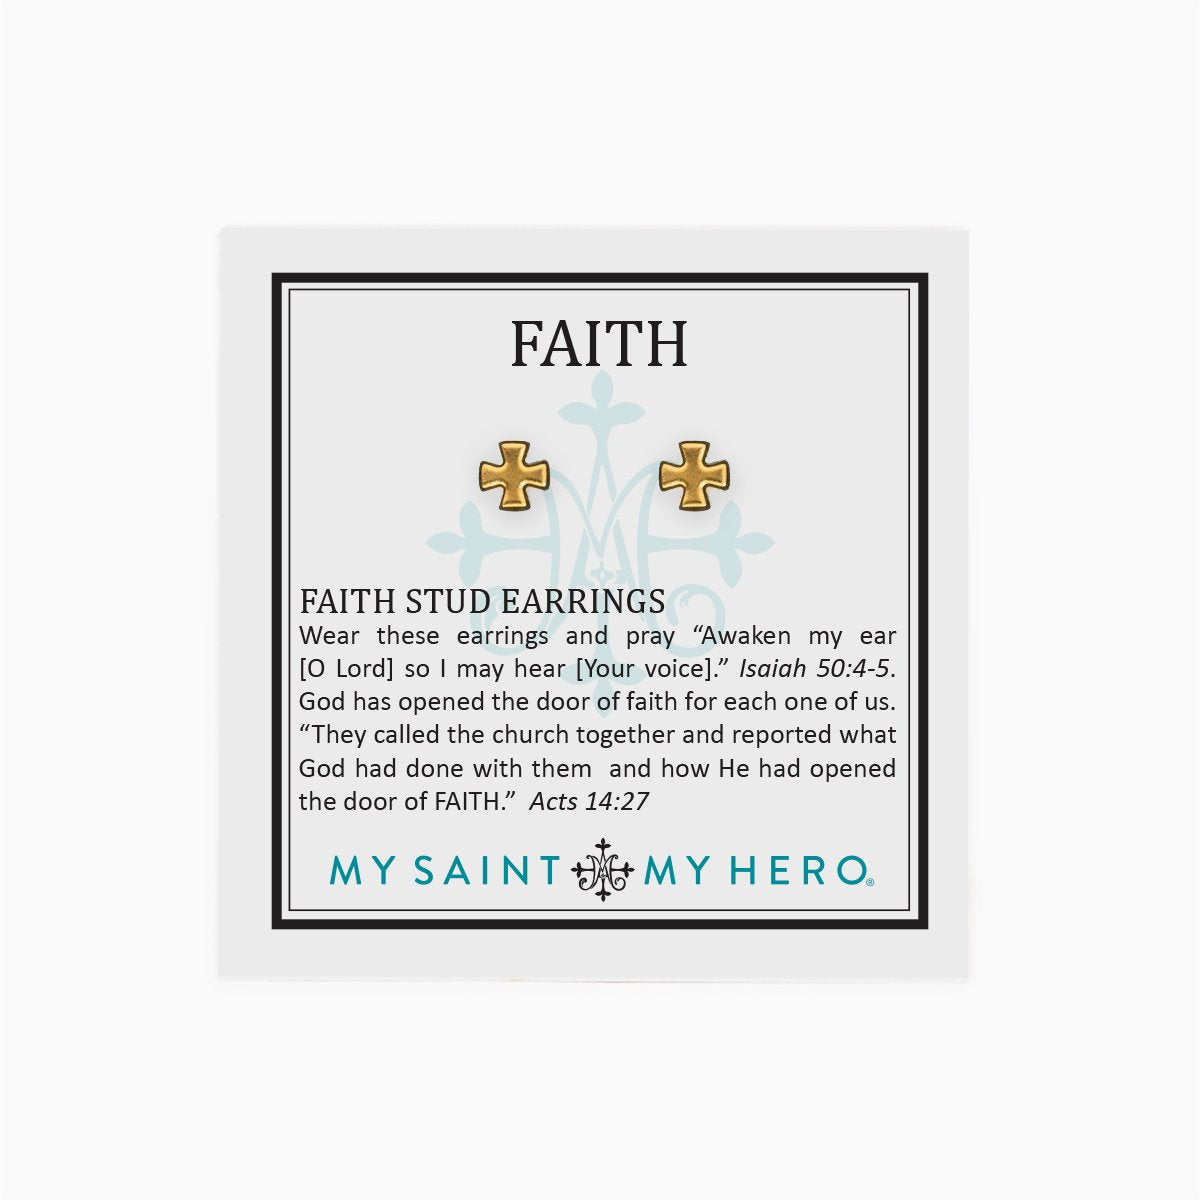 Faith Stud Earrings